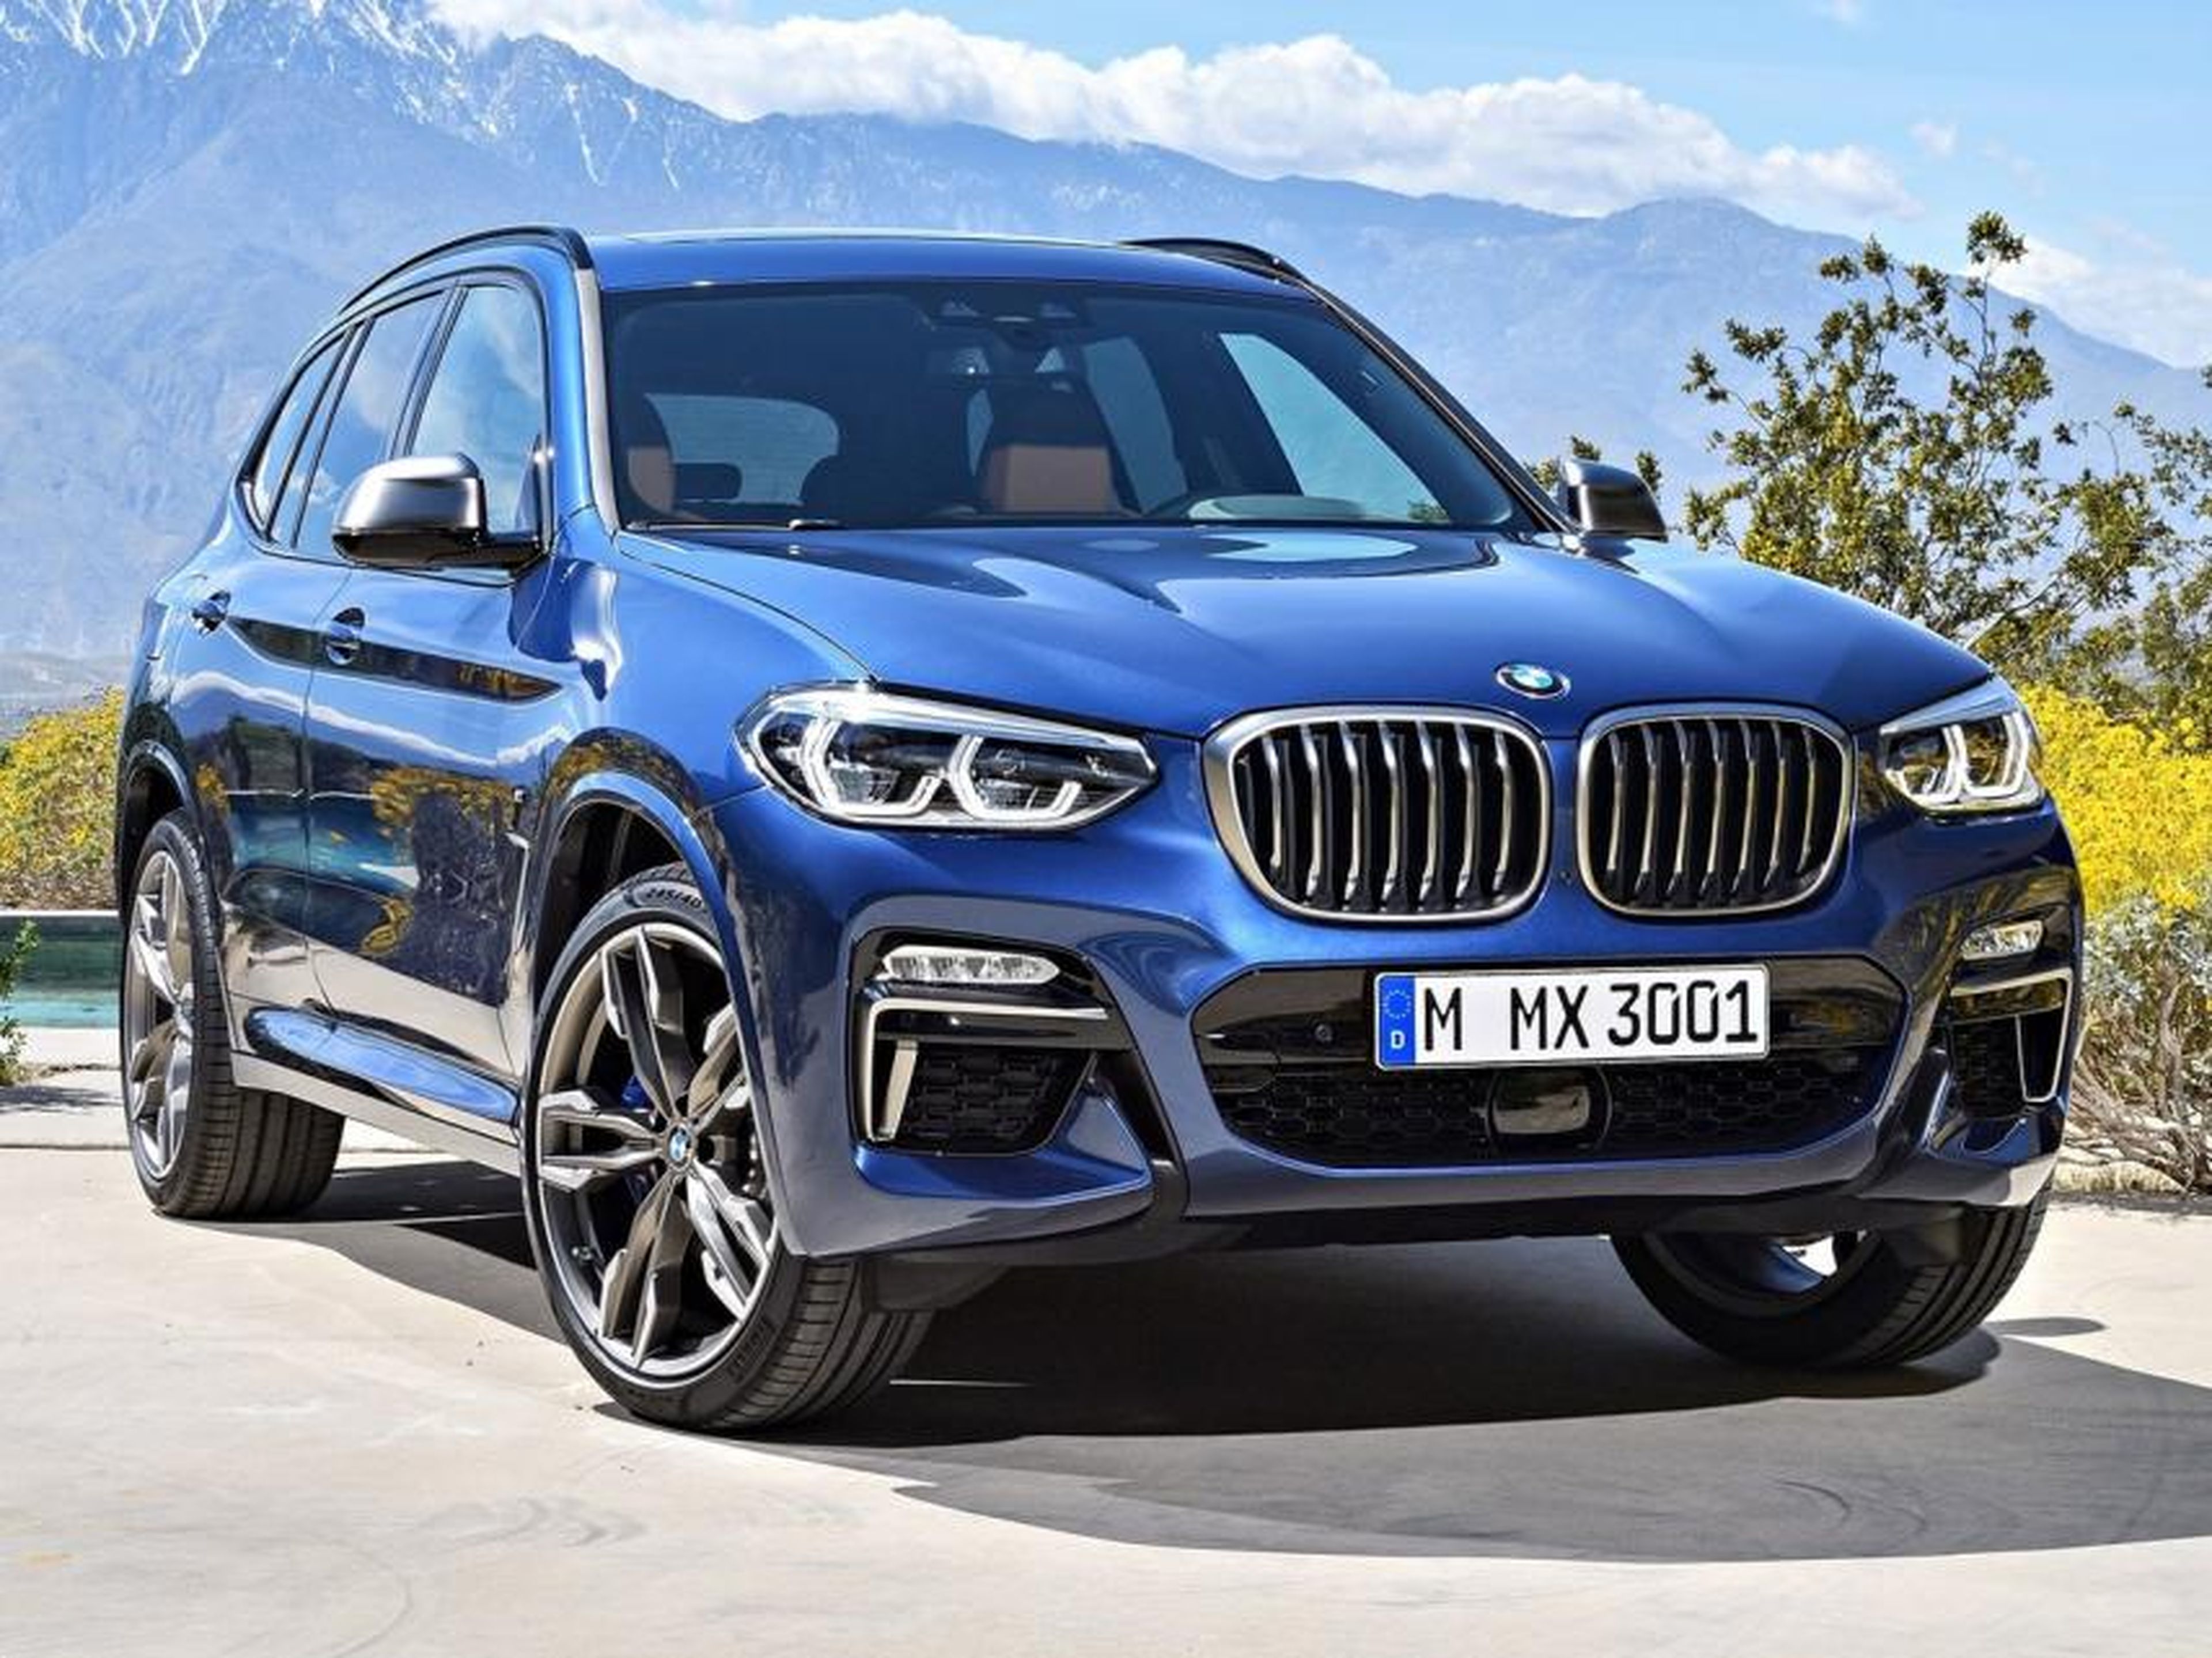 BMW X3, precio y descuento de uno de los SUV más demandados